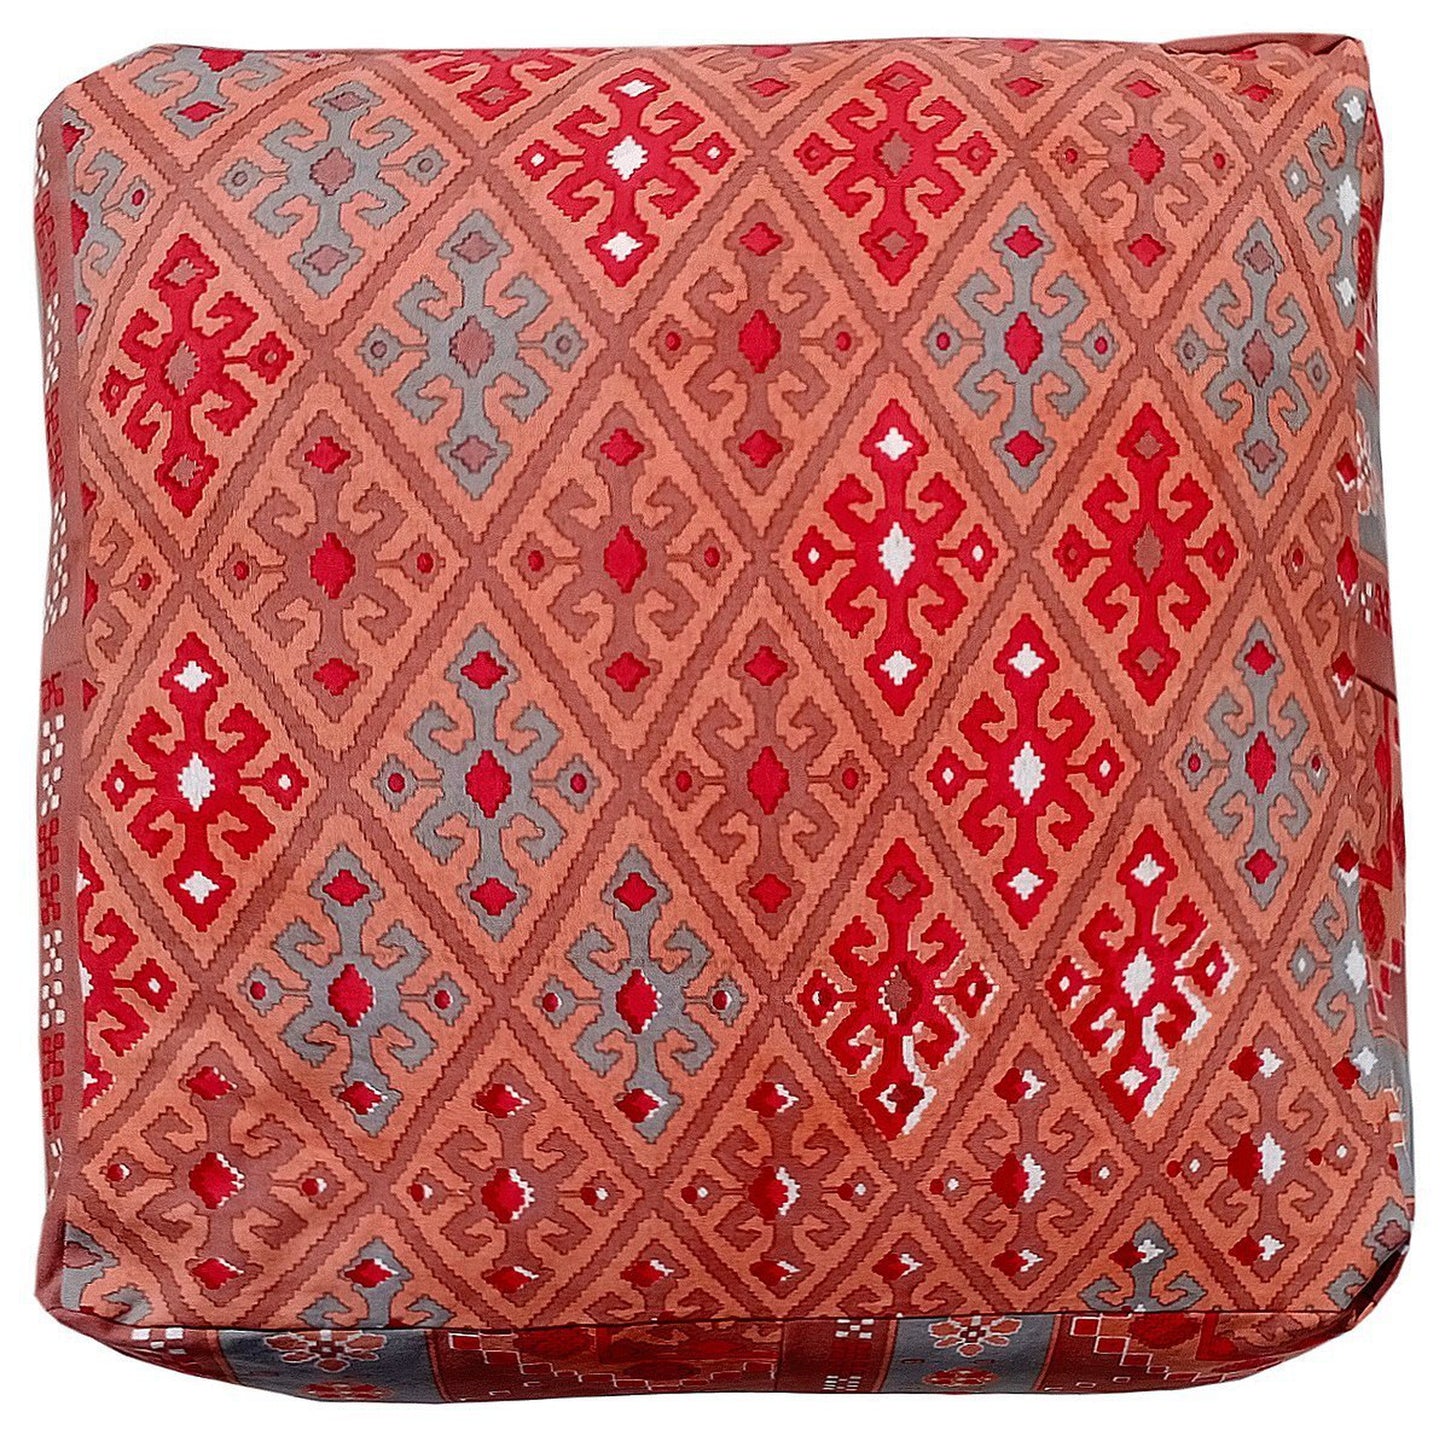 Red Canvas Ottoman / bean bag - The Teal Thread